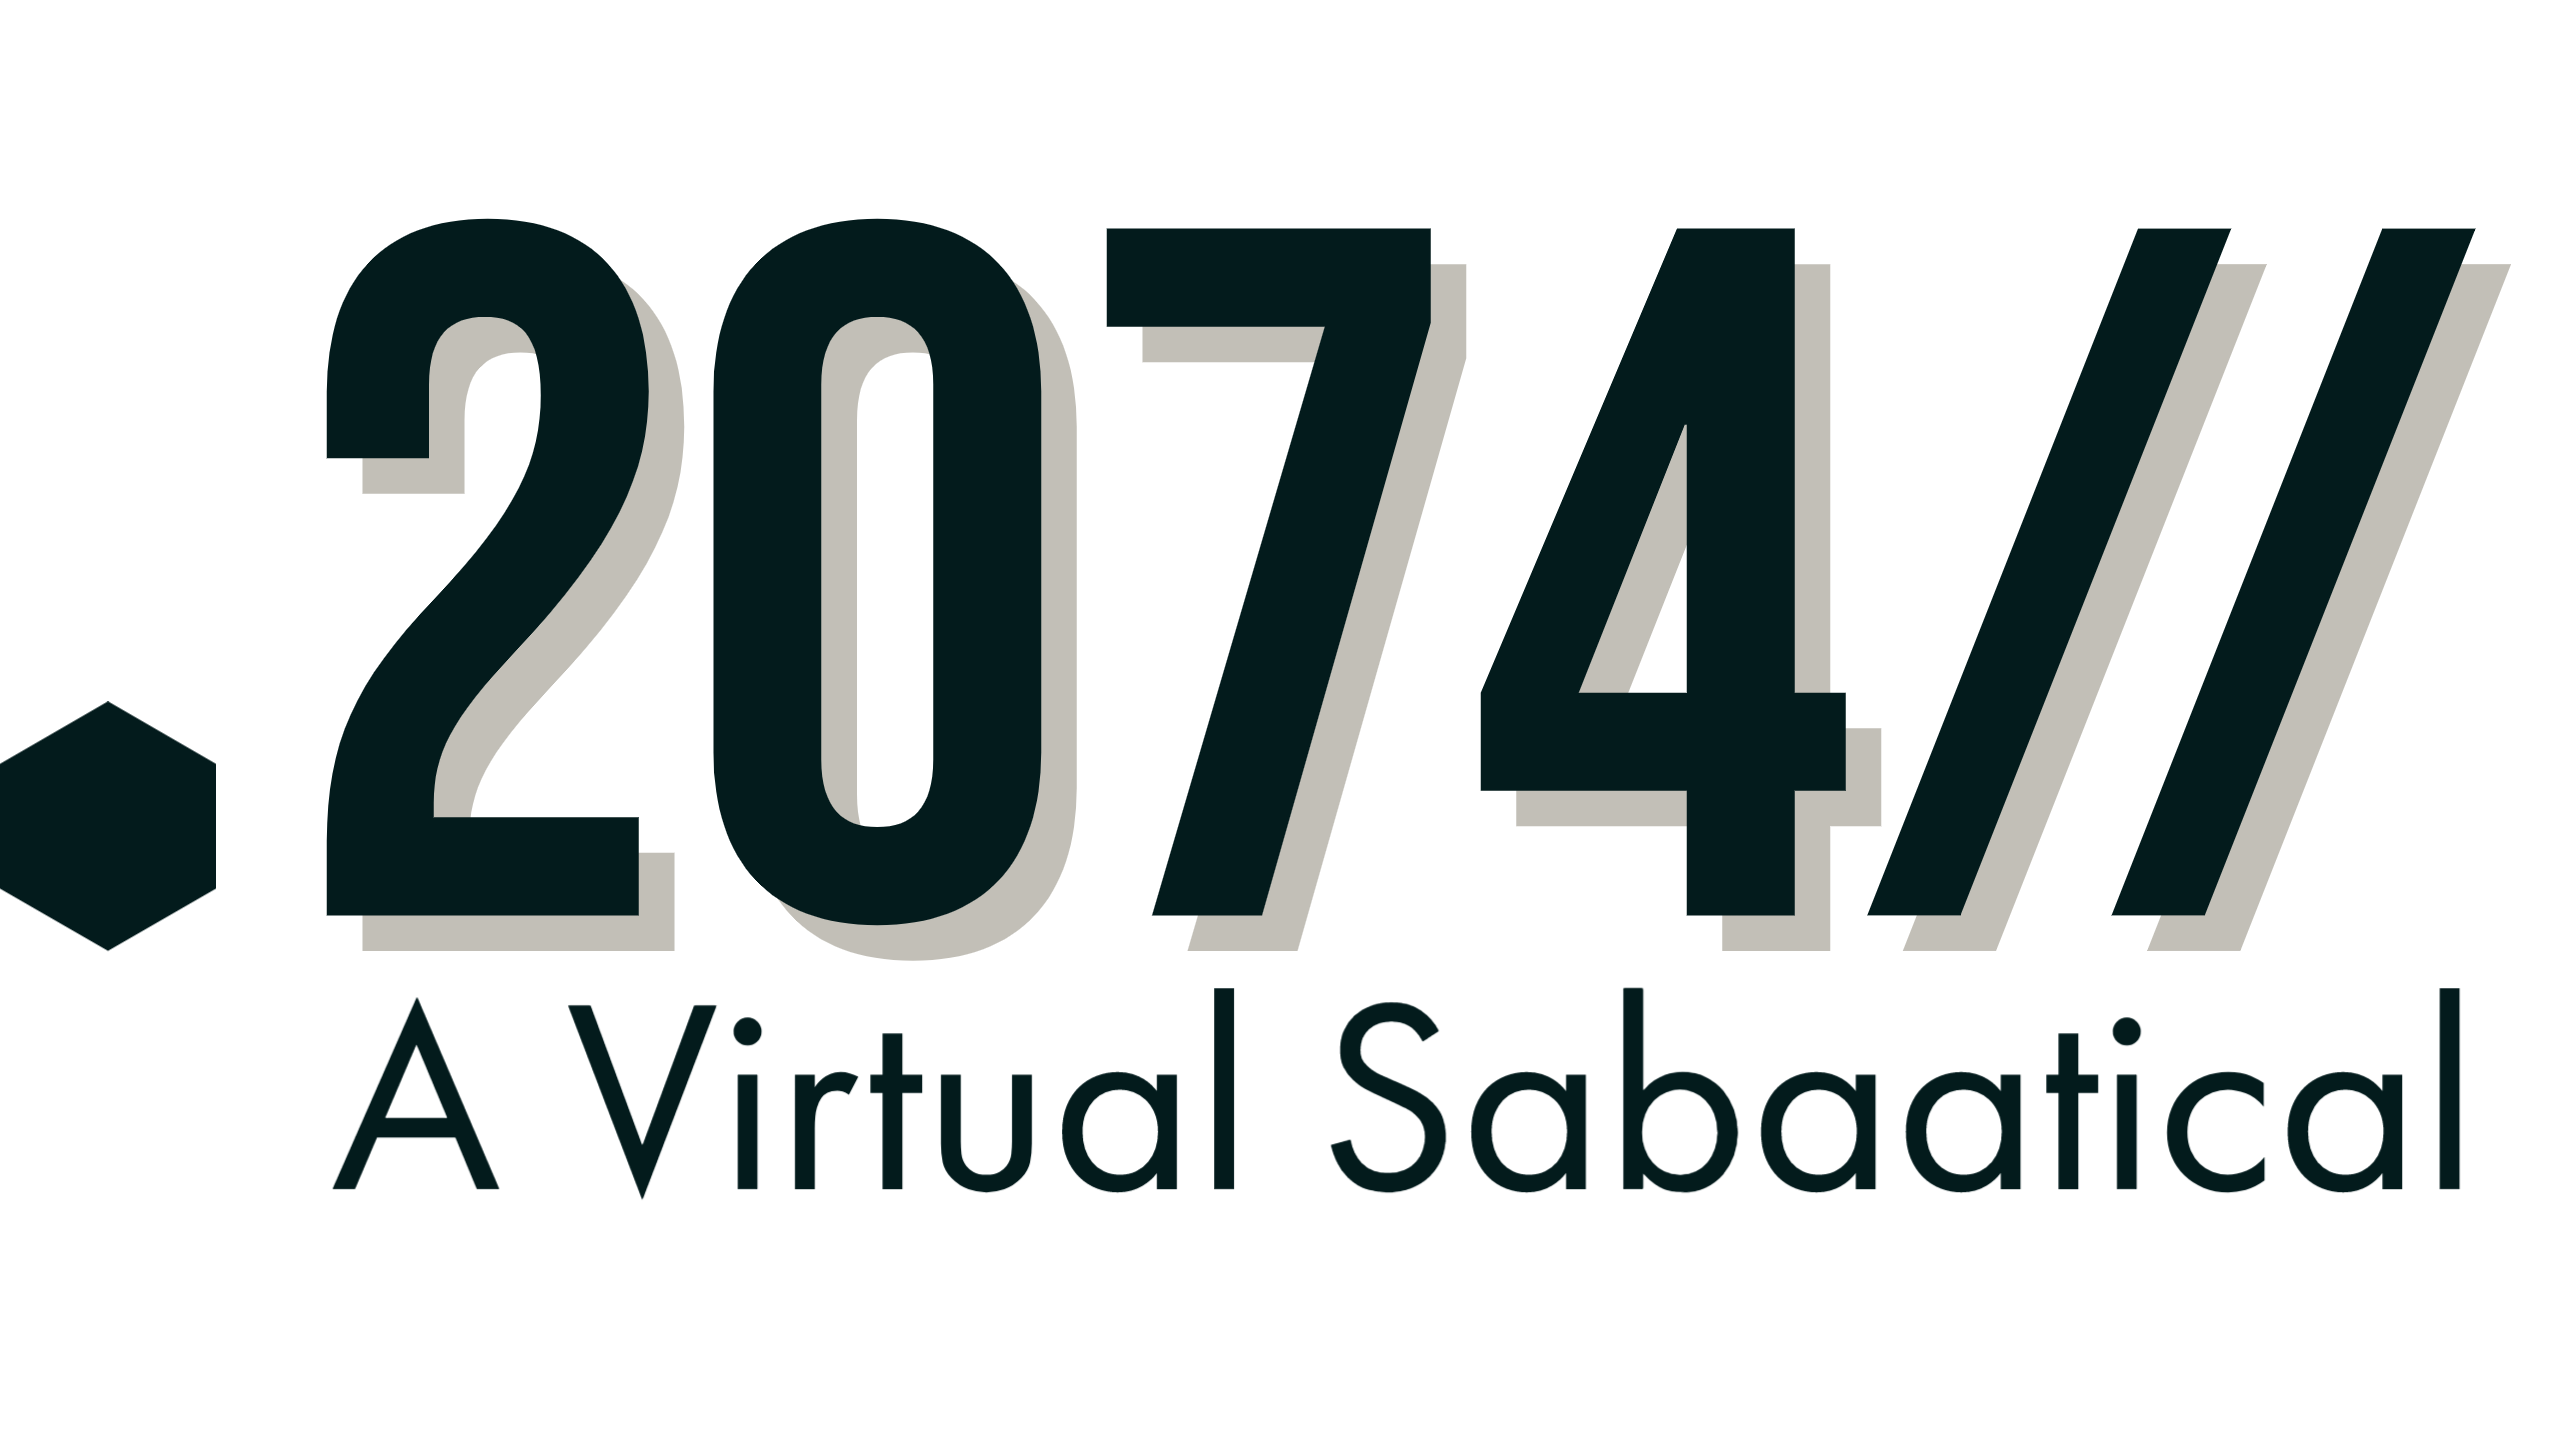 .2074//A Virtual Sabaatical